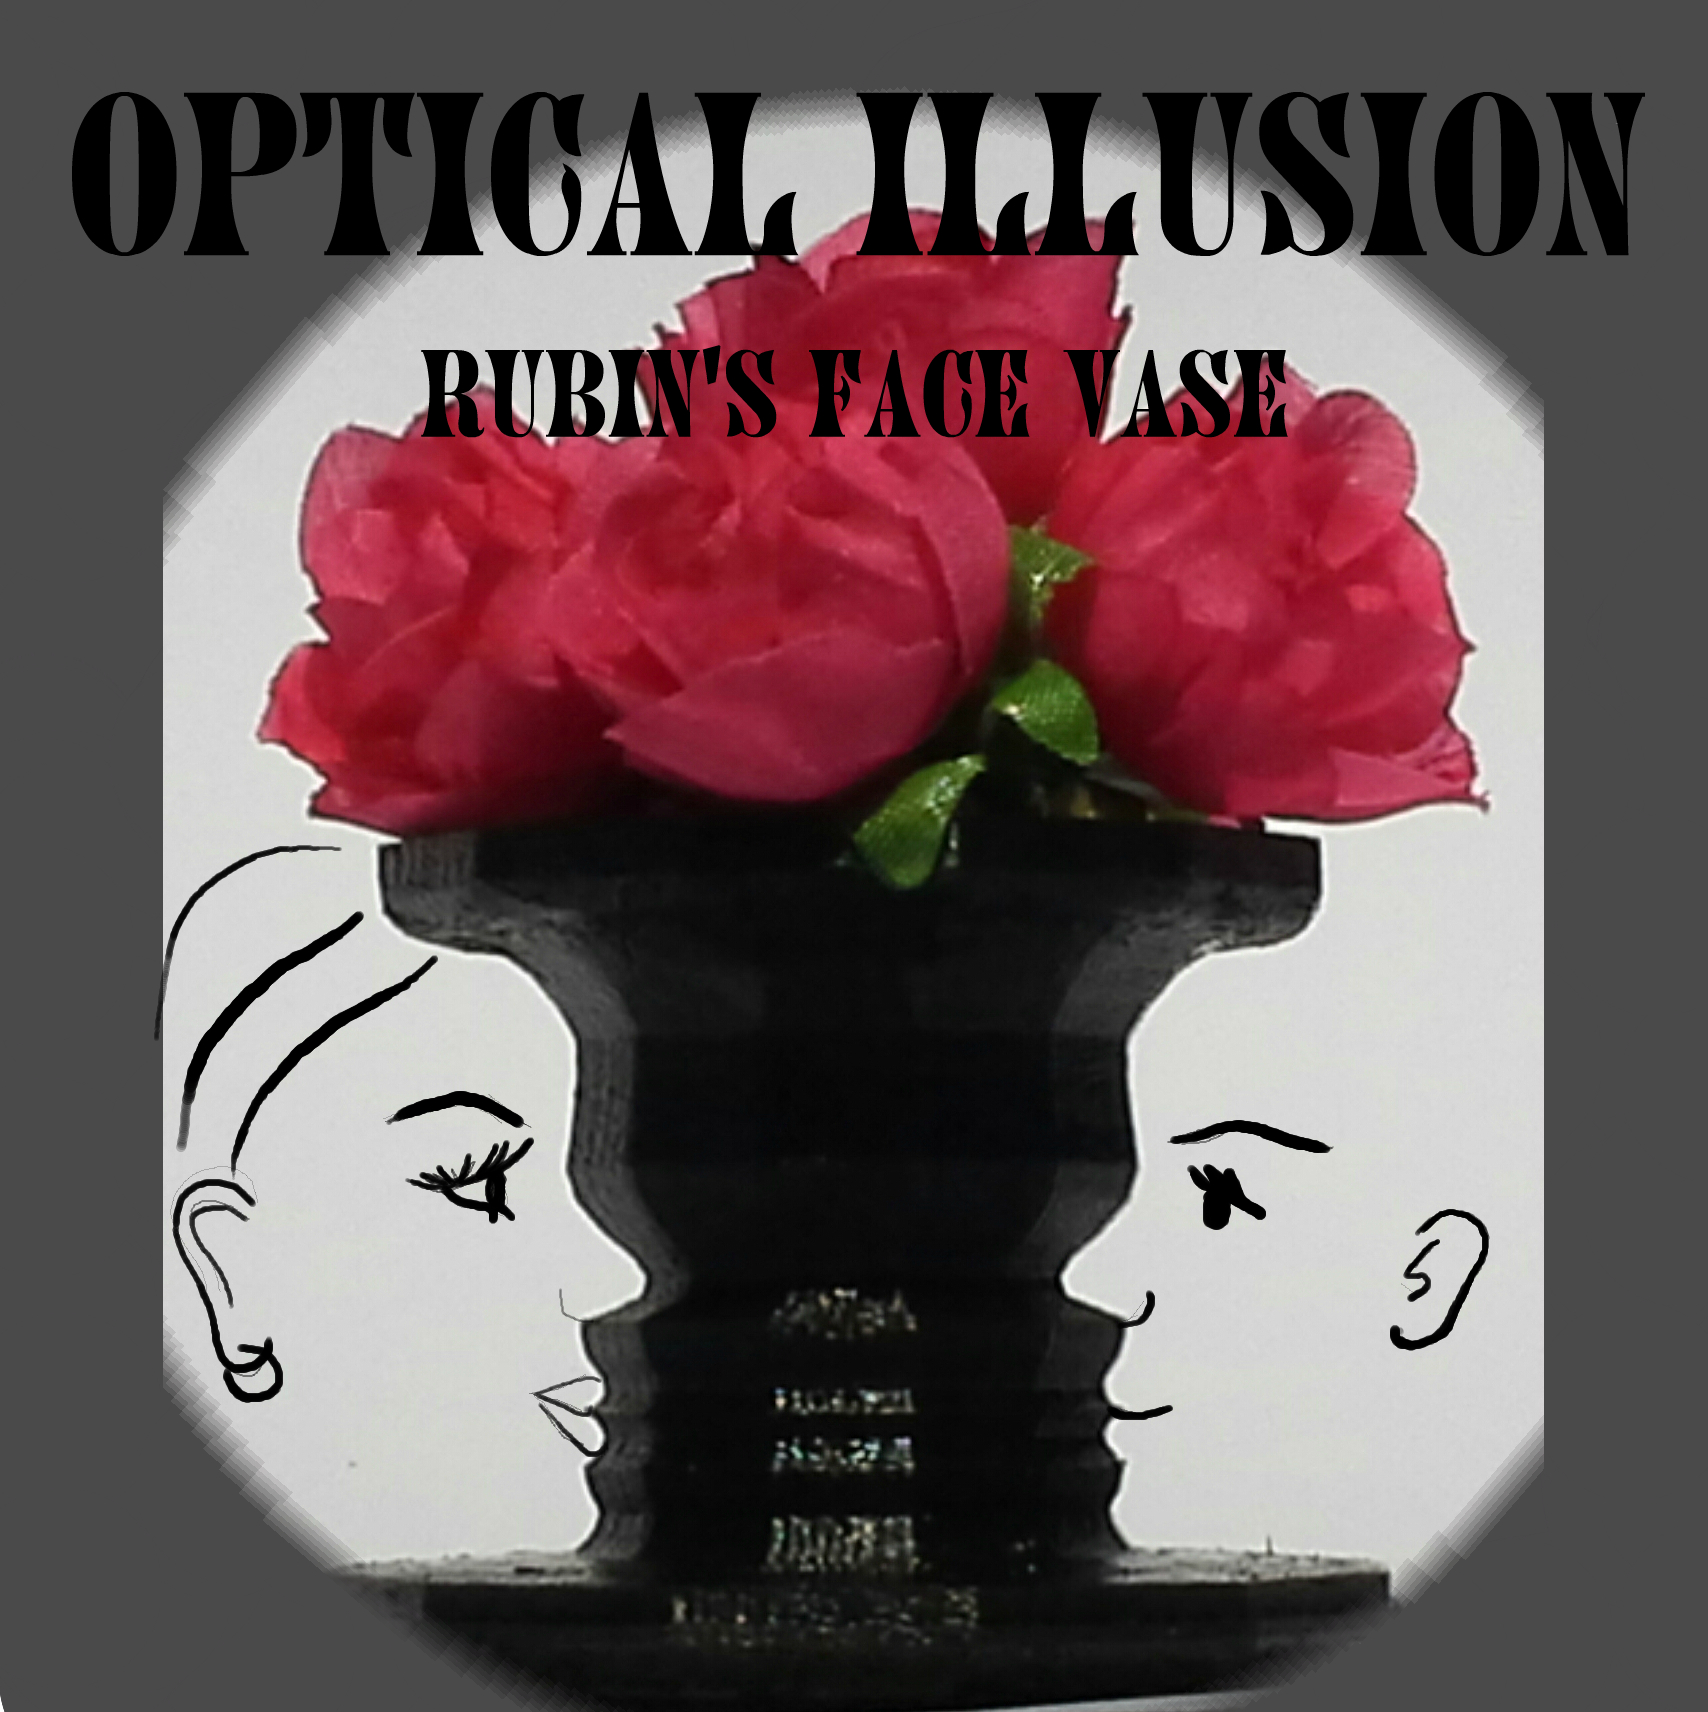 Optical Illusion Vase. Rubin's Vase. Negative space image.